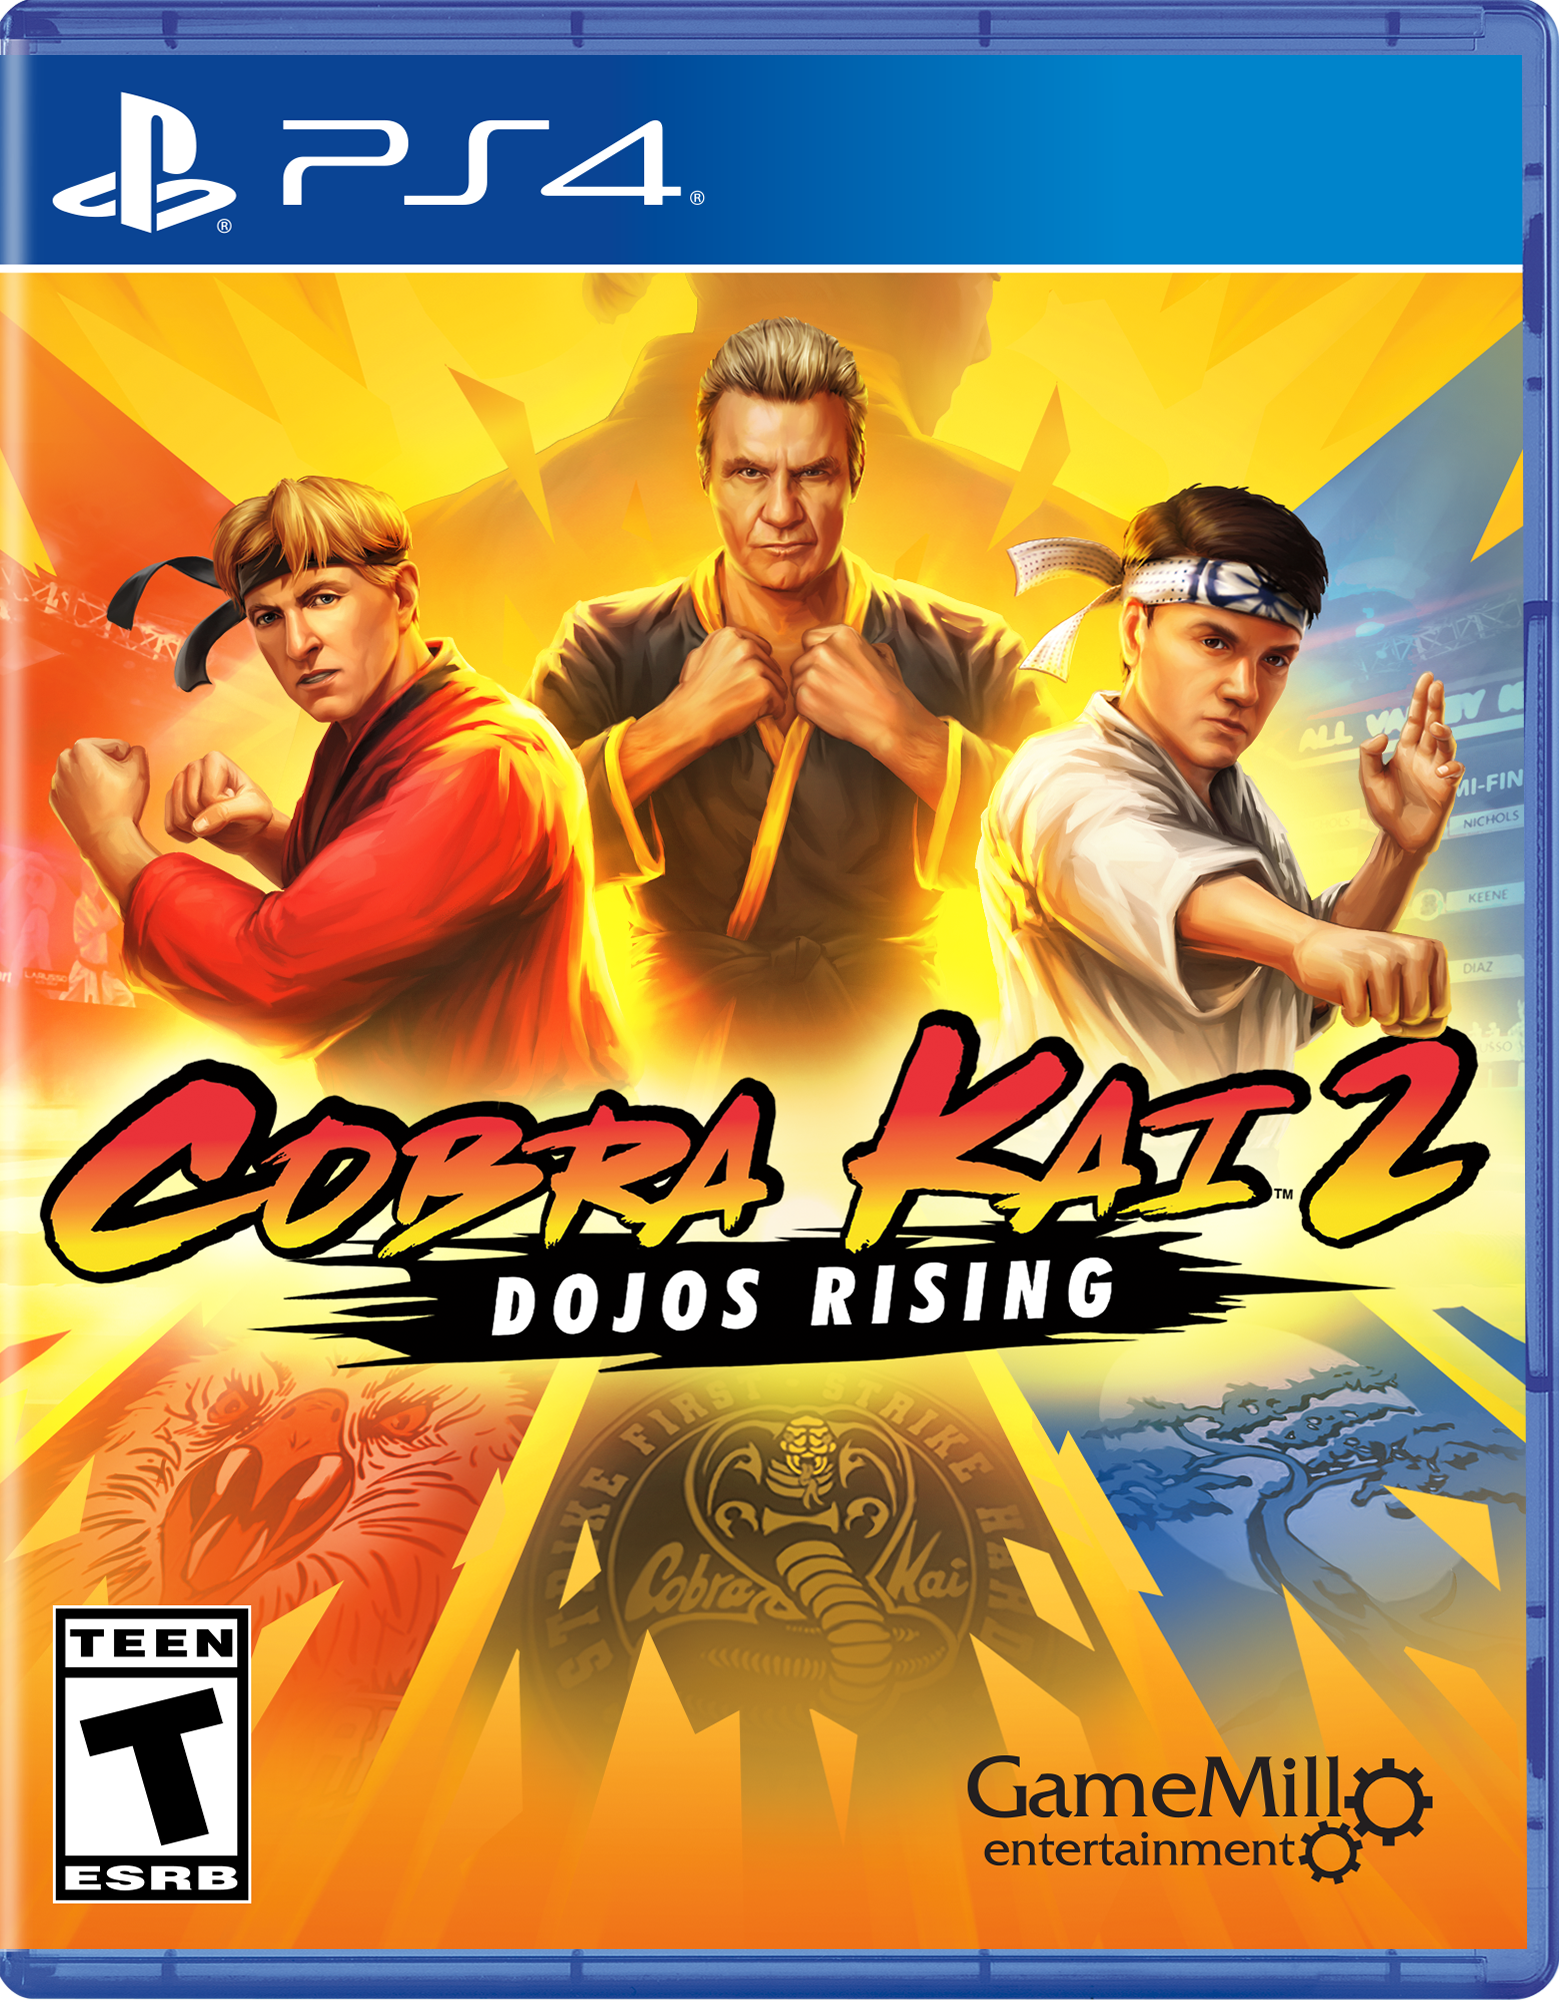 Empresa brasileira está desenvolvendo o jogo Cobra Kai 2: Dojos Rising -  Drops de Jogos